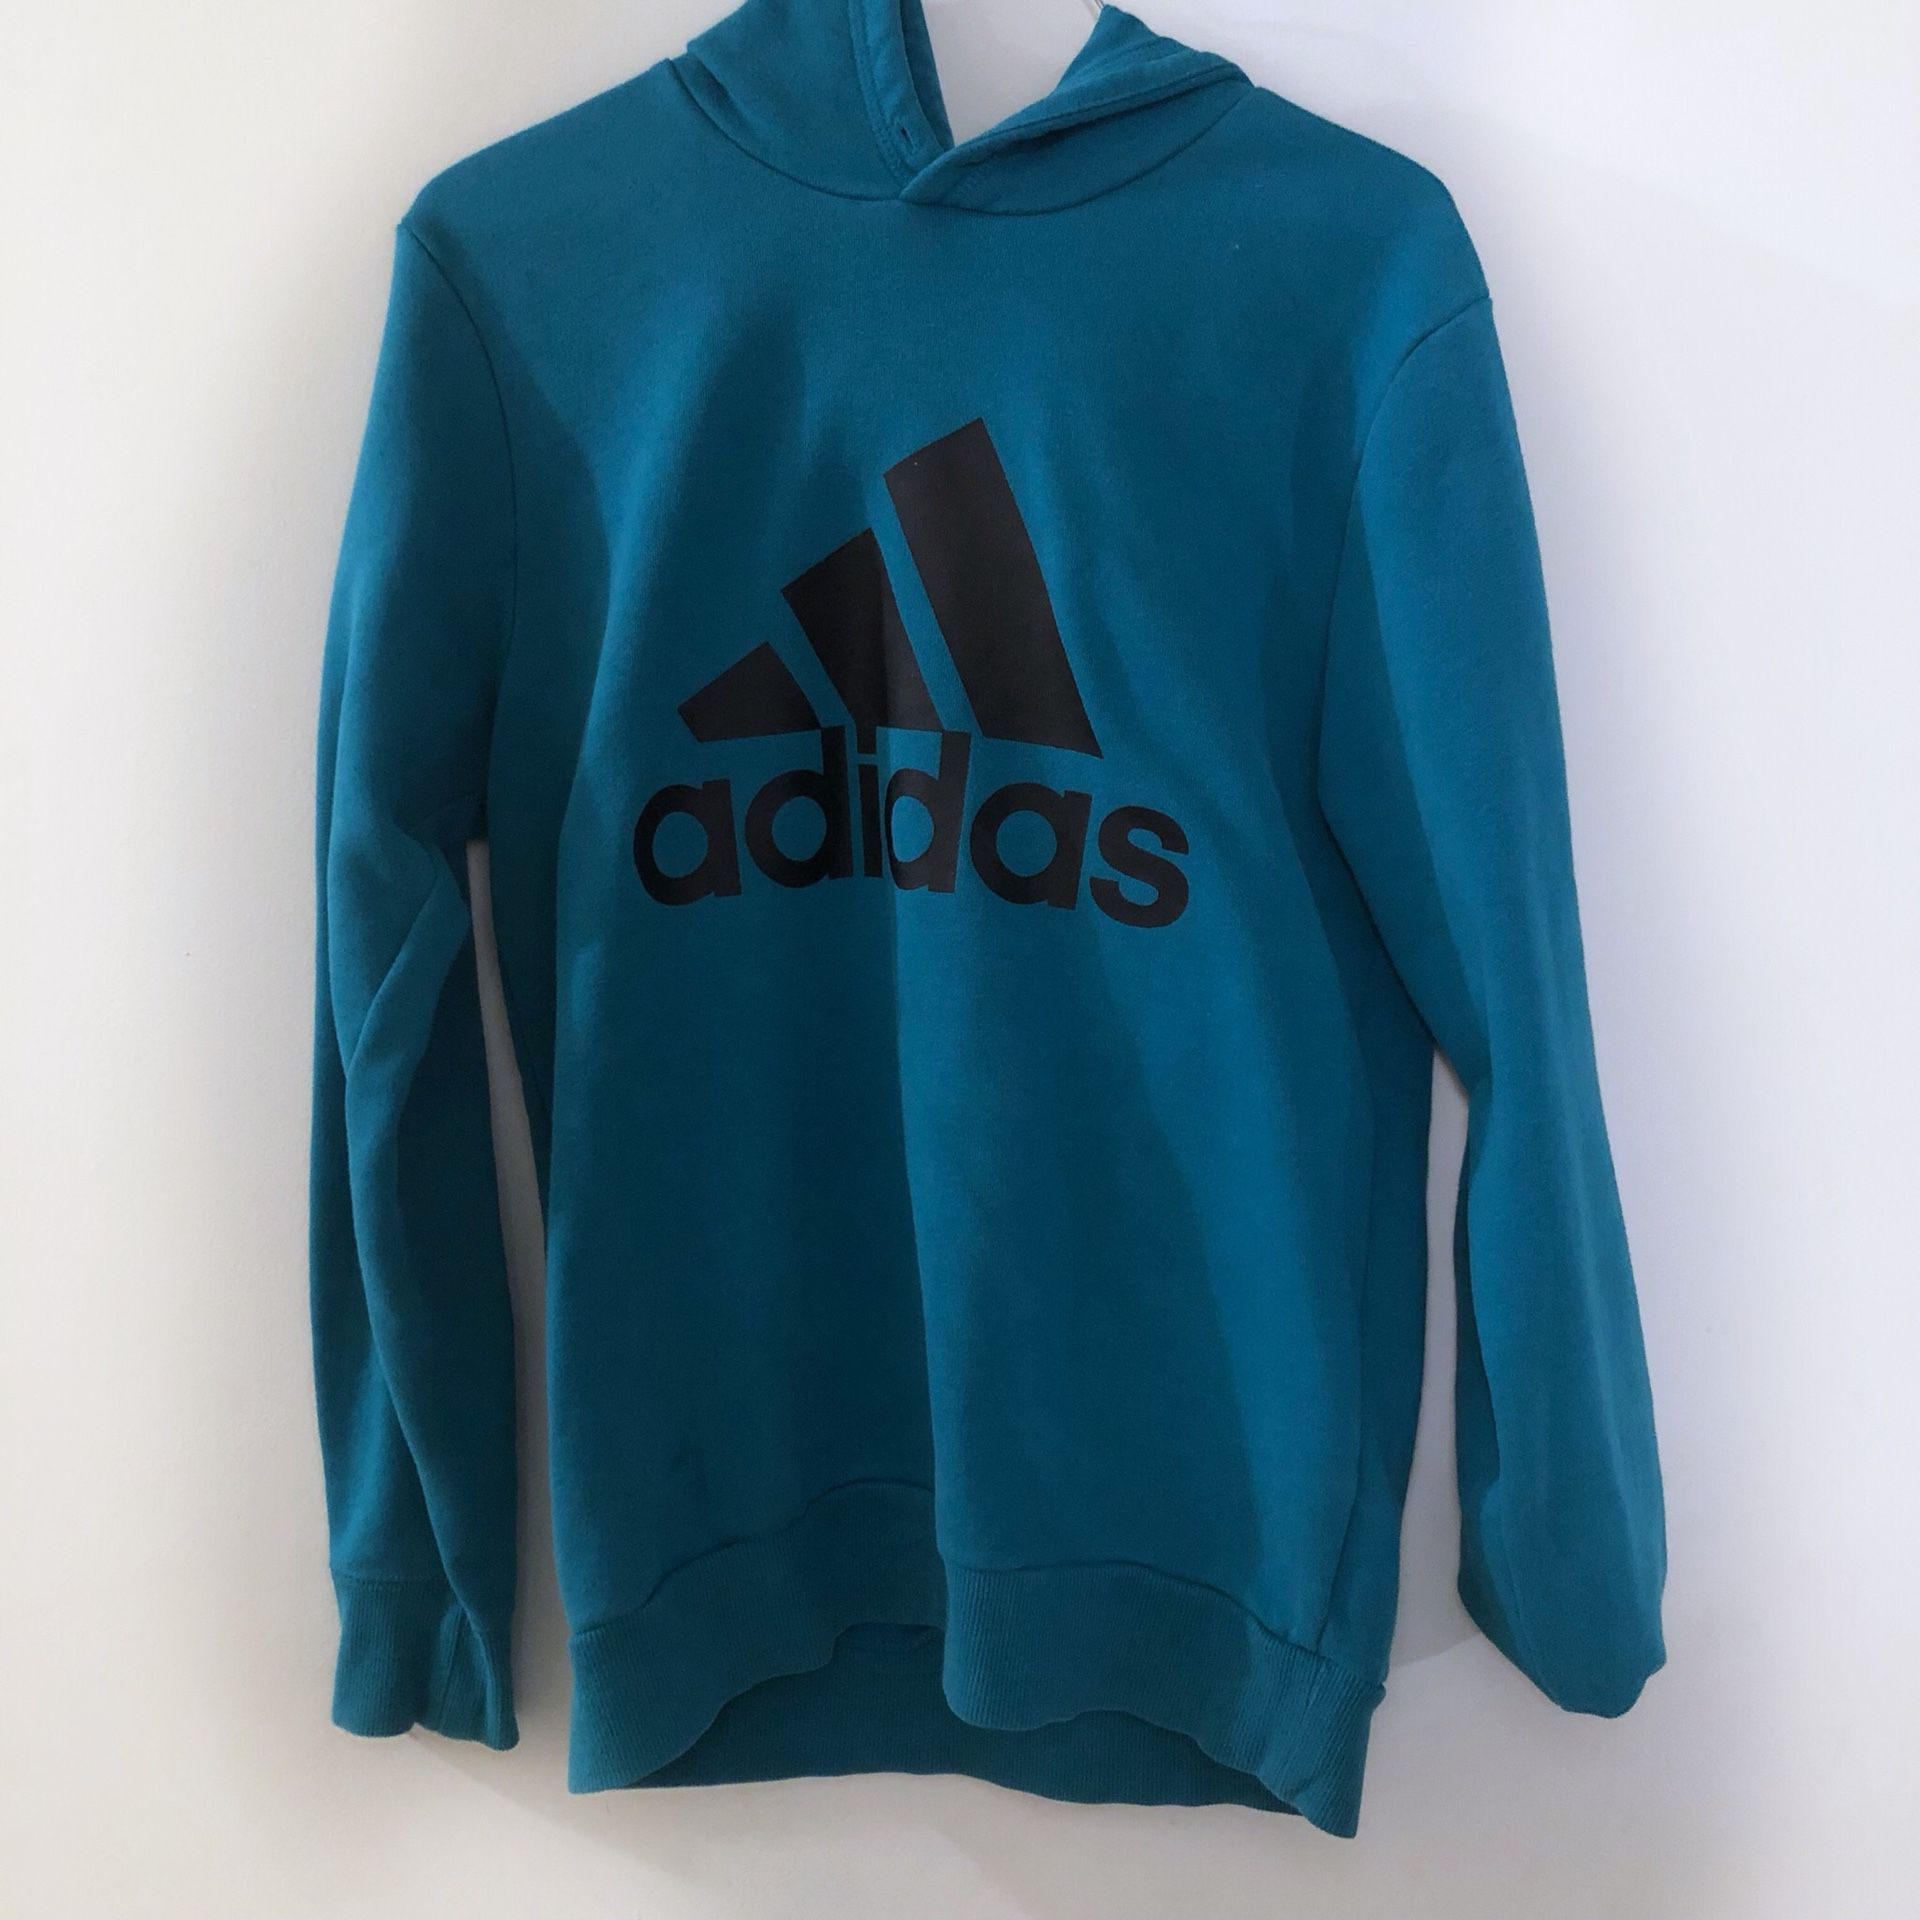 Adidas Teal Blue Hoodie Sweatshirt